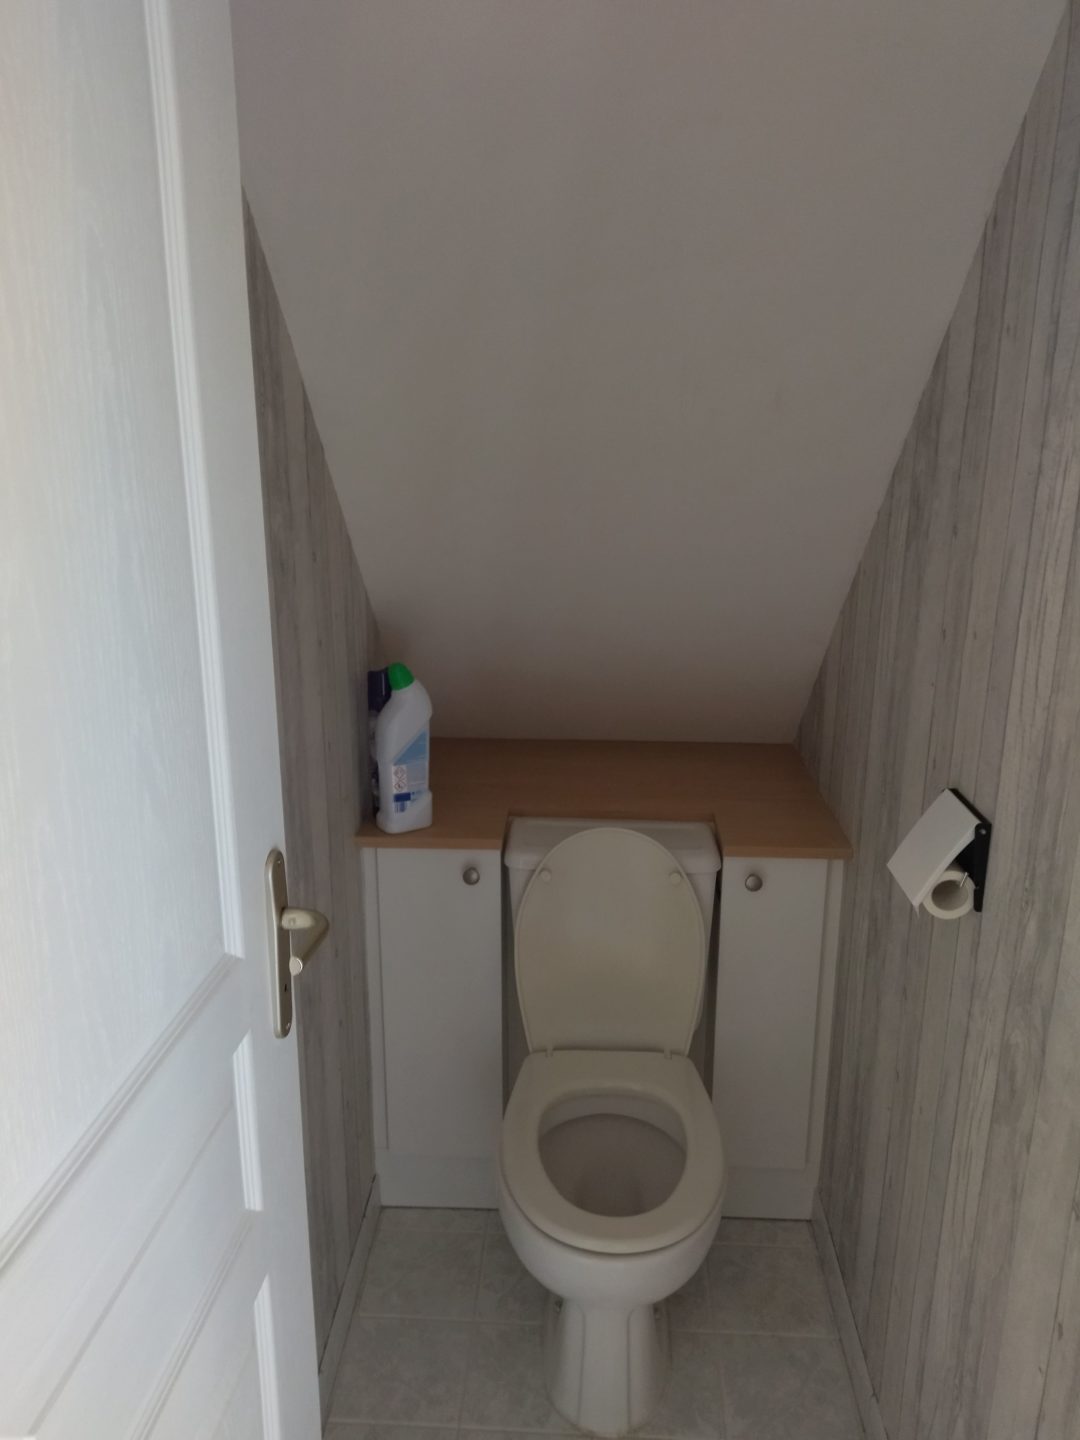 Meuble toilette Treffiagat - Aménagement intérieur - Quimper Brest